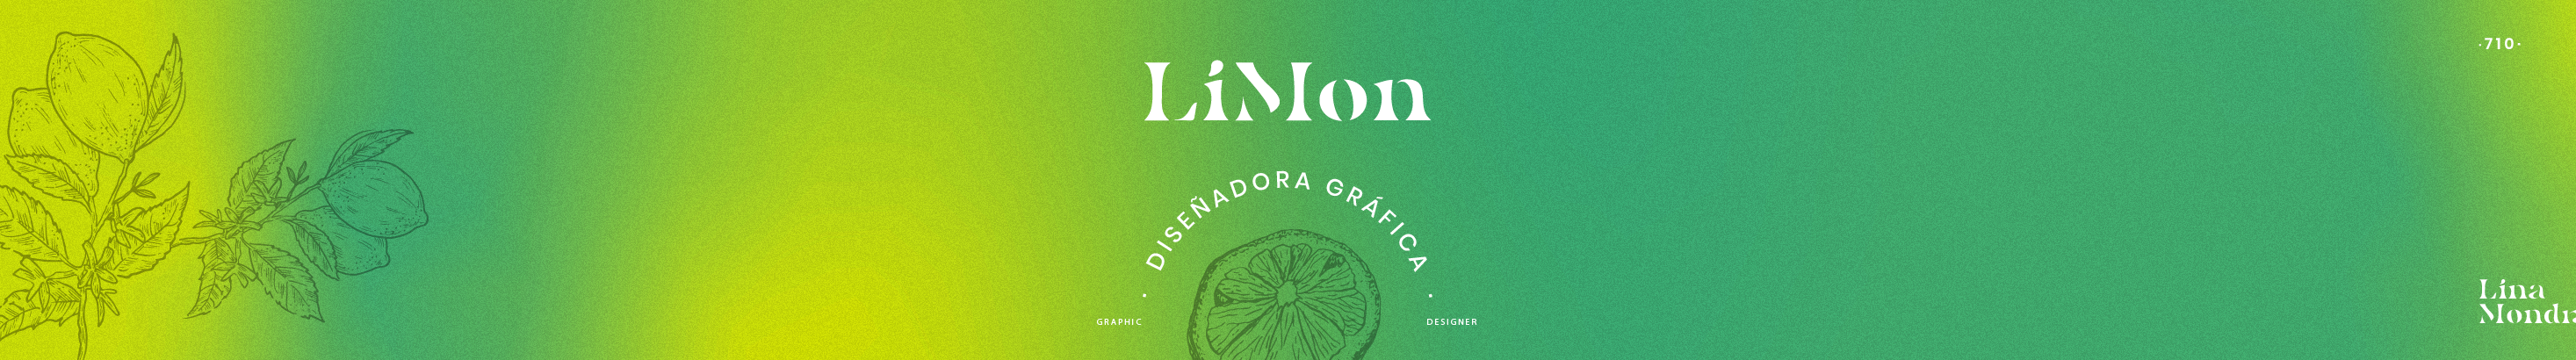 Lina Mondragón | LiMon's profile banner